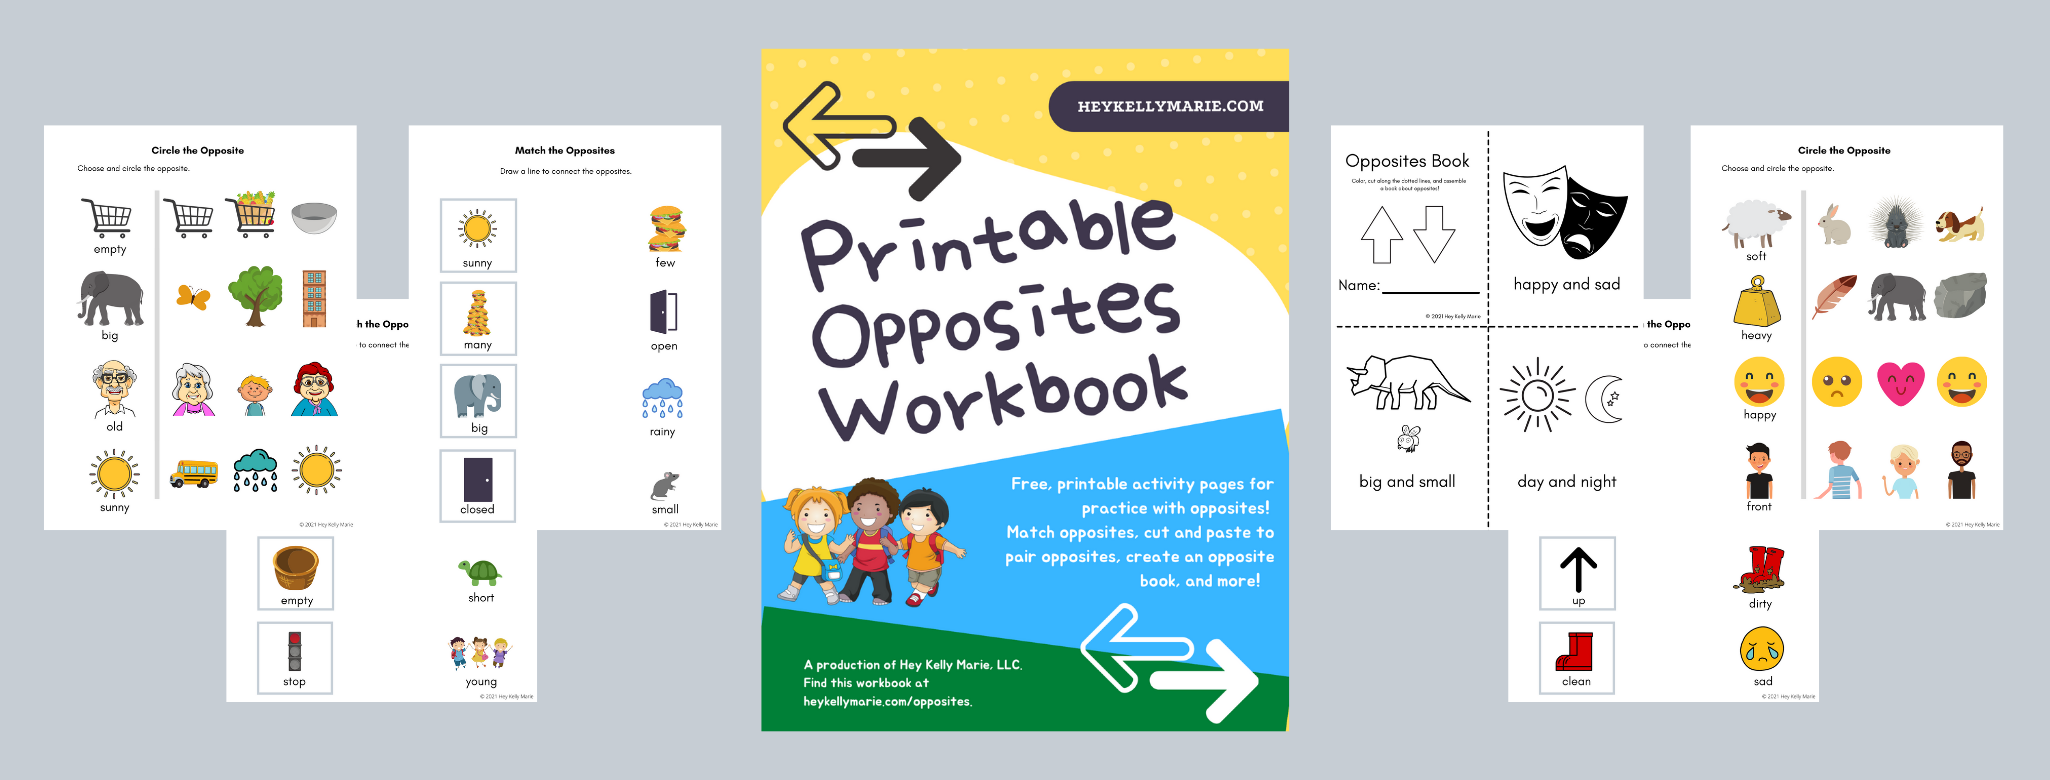 printable opposites workbook 12 free worksheets